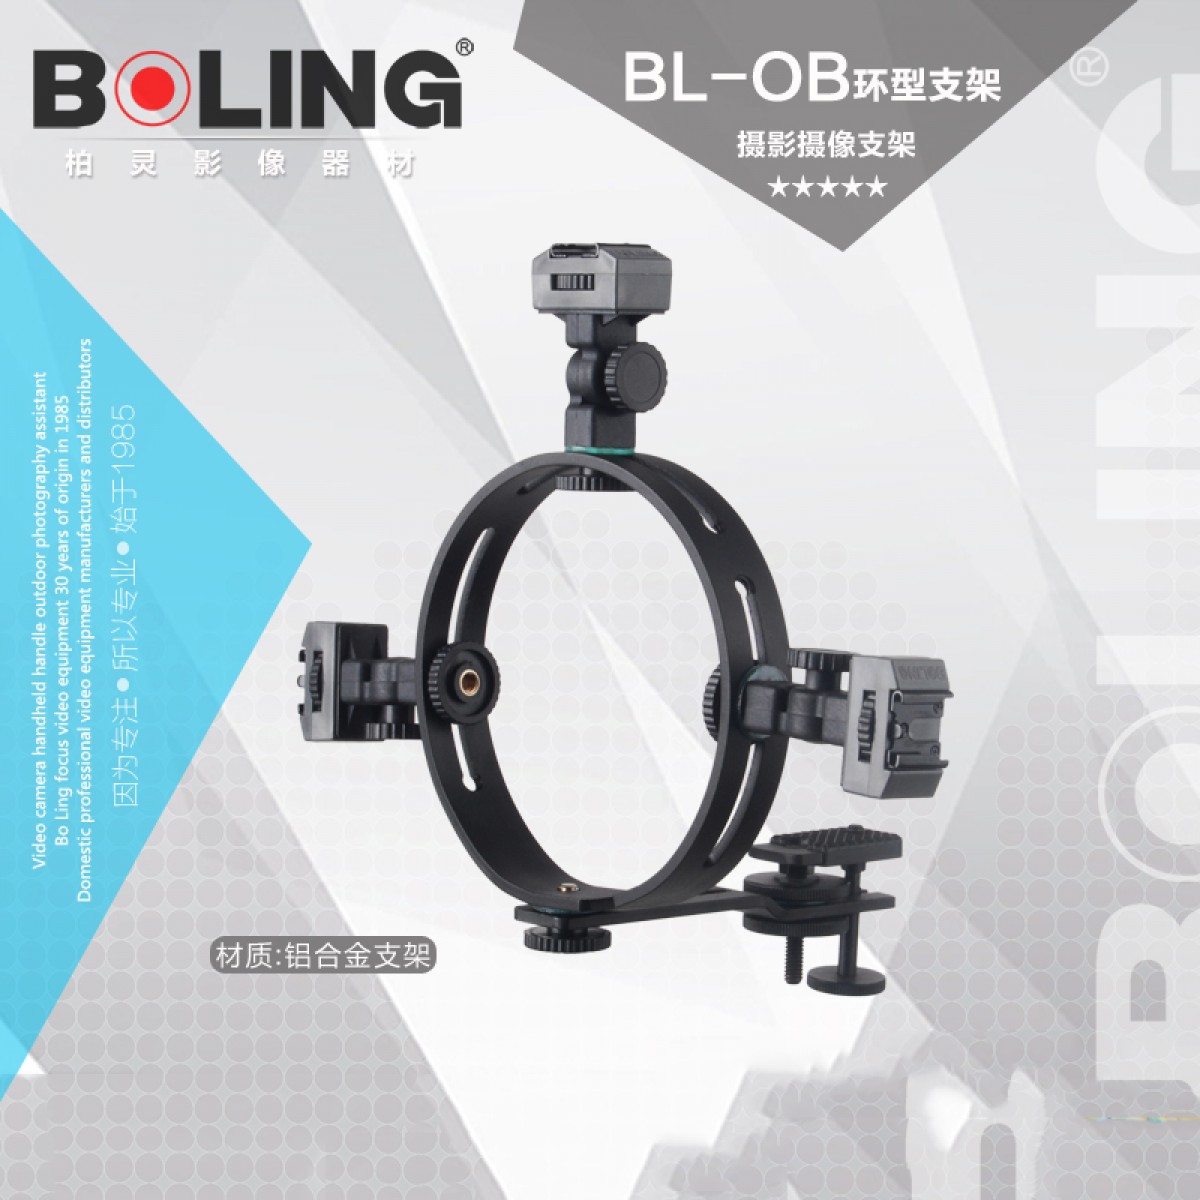 摄影器材 柏灵BL-OB环形支架 摄影摄像O型支架 相机支架 热靴支架